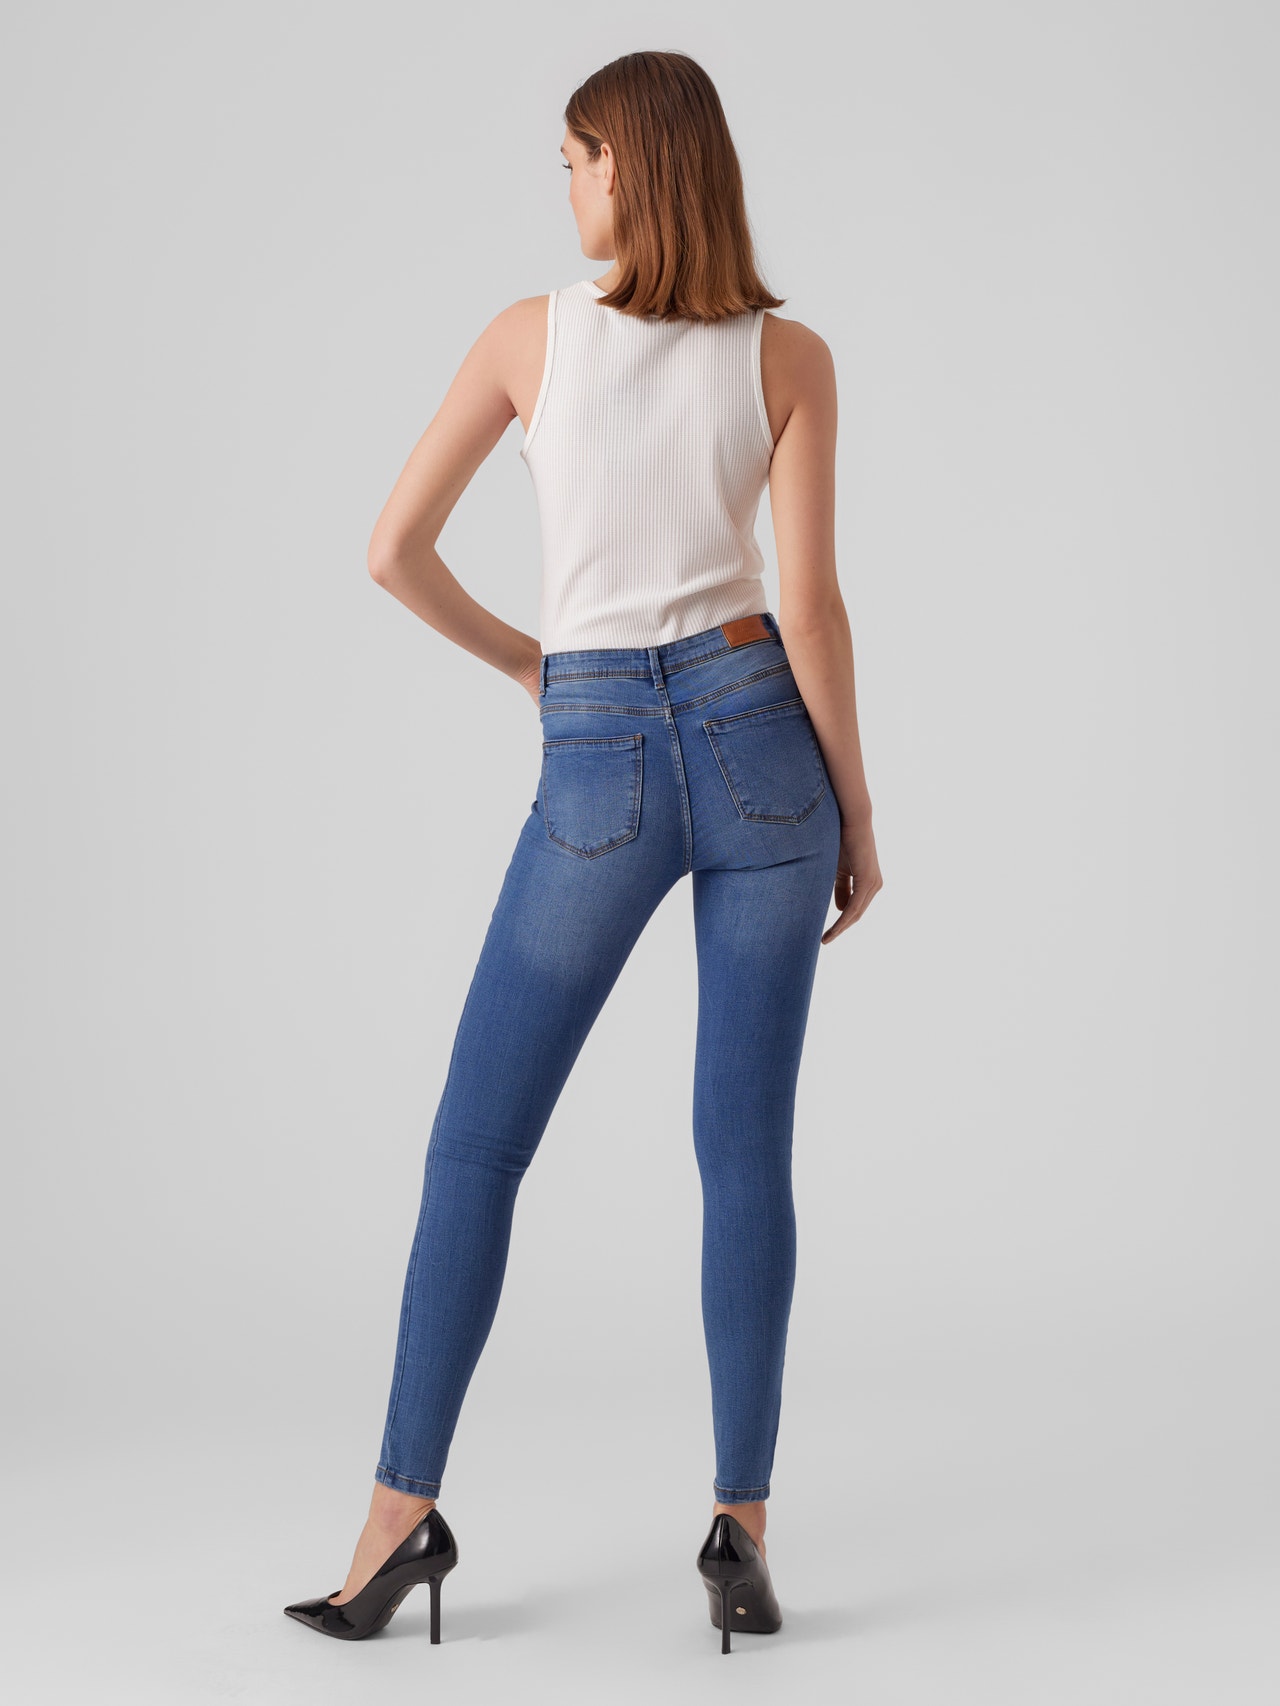 træthed Eftermæle opstrøms Skinny Fit Mid rise Jeans | Medium Blue | Vero Moda®